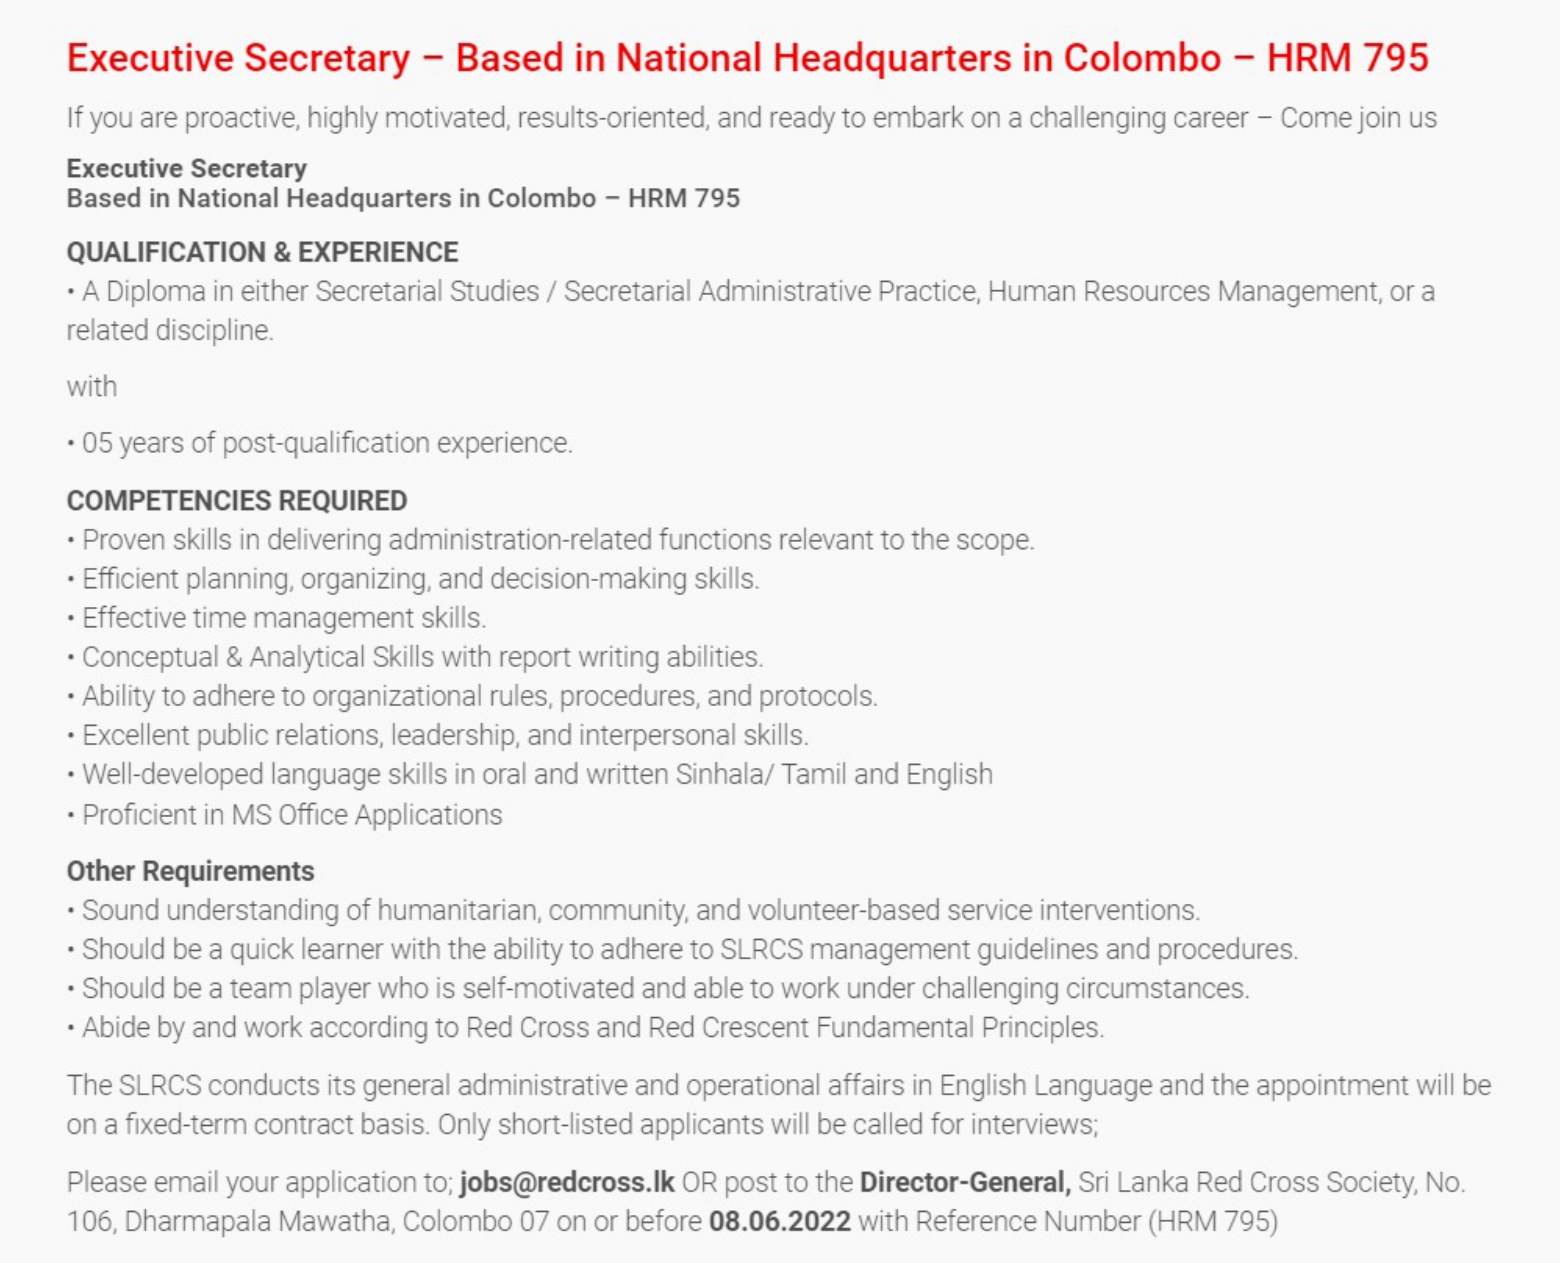 Executive Secretary Vacancies - Sri Lanka Red Cross Society (SLRCS)